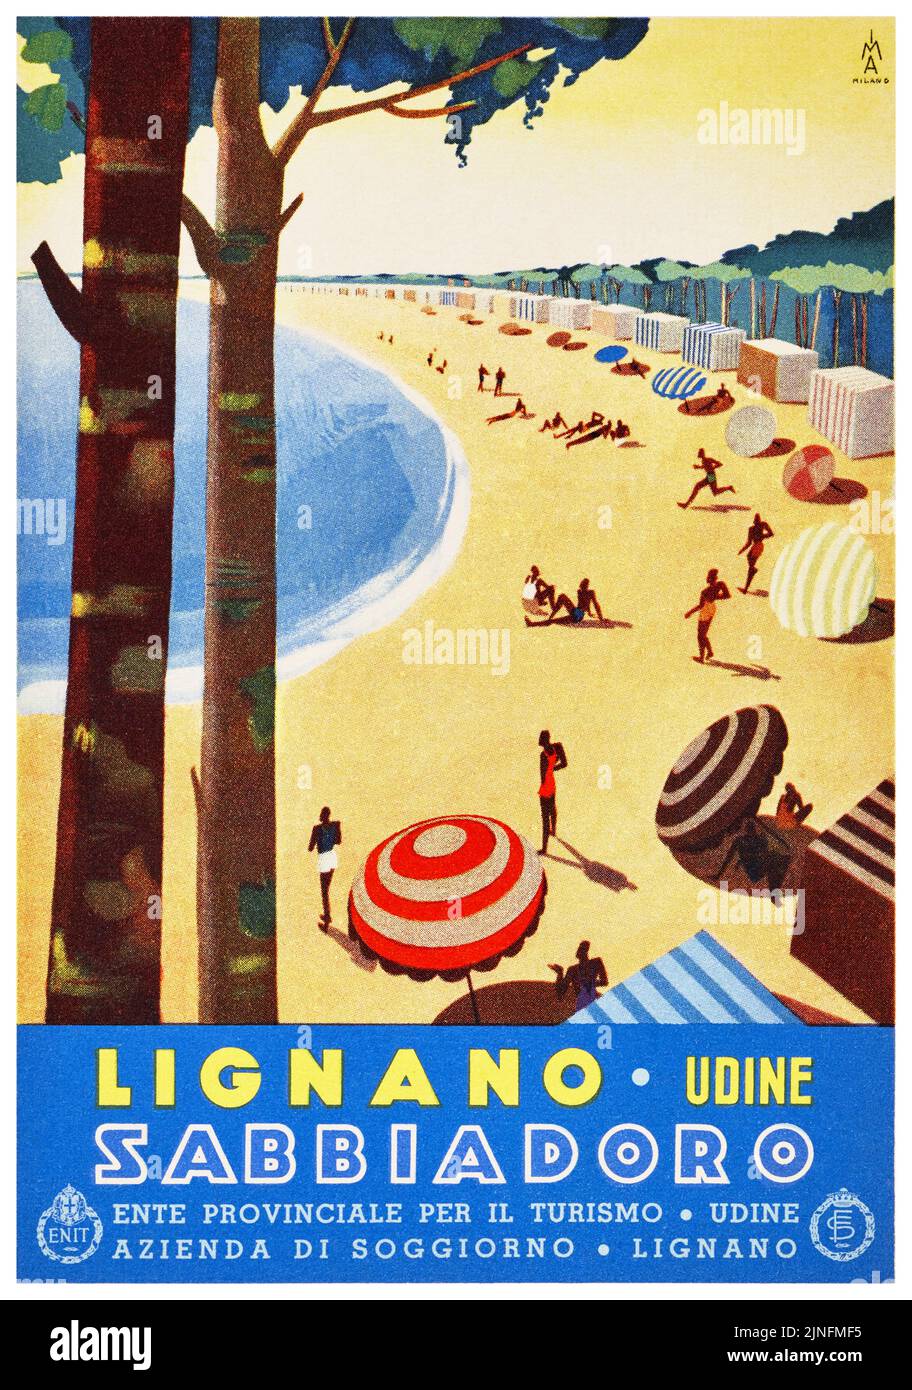 Lignano. Udine. Sabbiadoro. Künstler unbekannt. Plakat veröffentlicht 1930 in Italien. Stockfoto